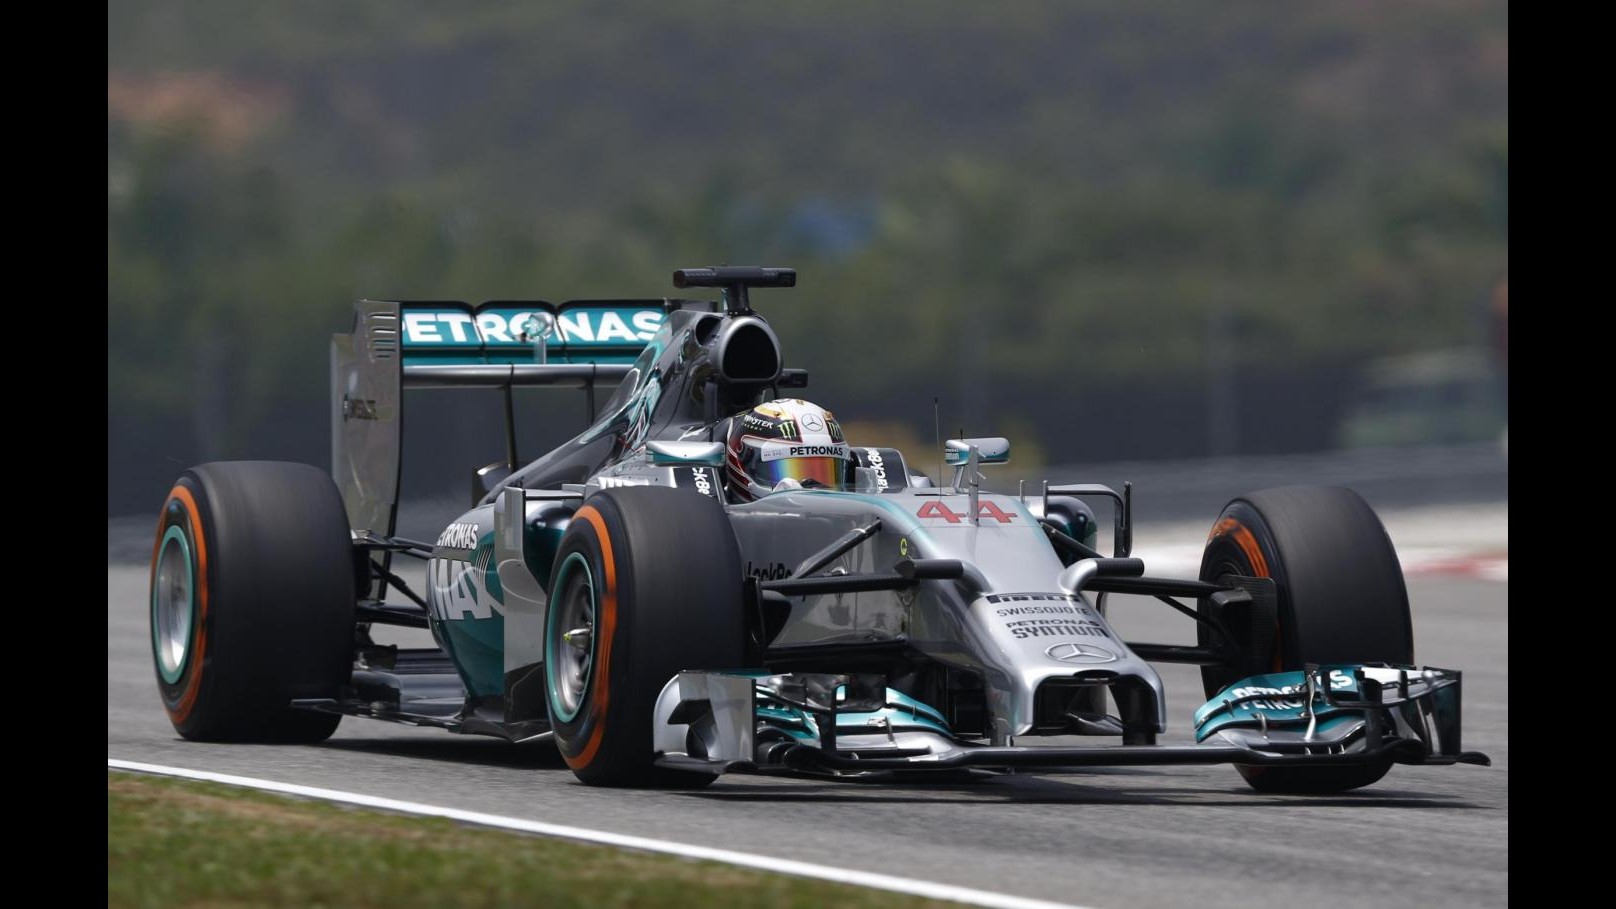 F1, Gp Malesia: Hamilton in pole sul bagnato davanti a Vettel, 4° Alonso e 6° Raikkonen